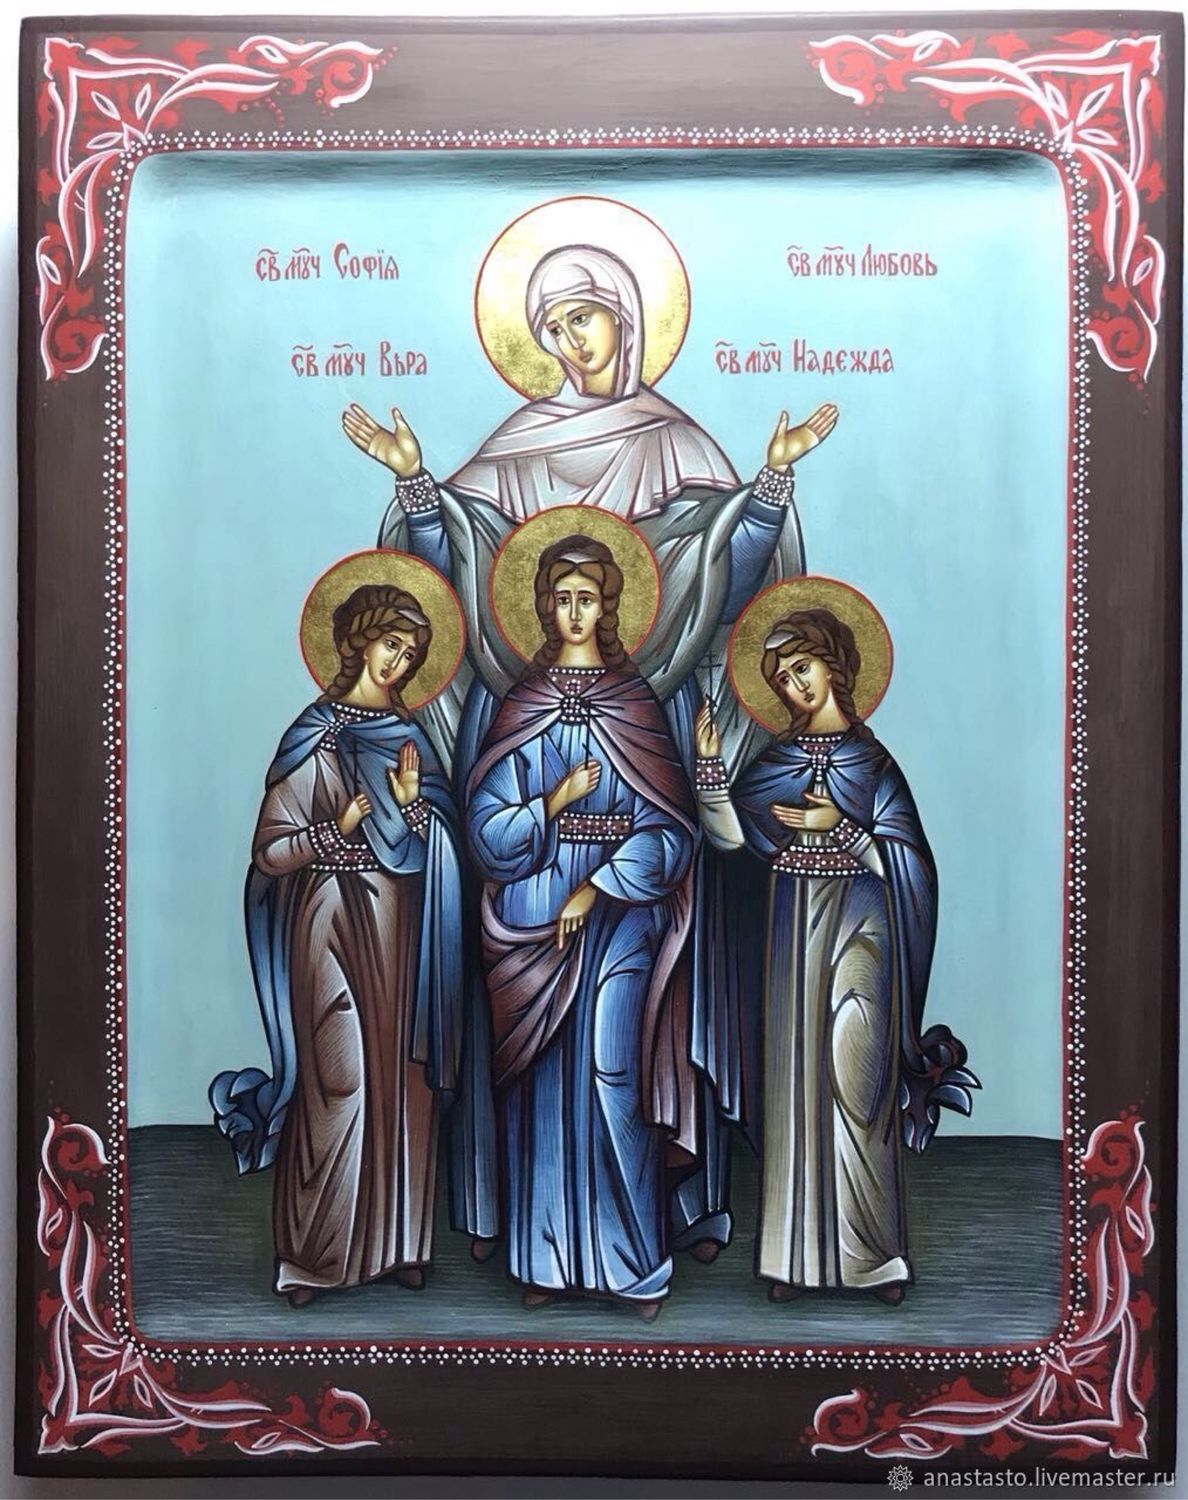 Икона веры надежды Любови и матери Софии